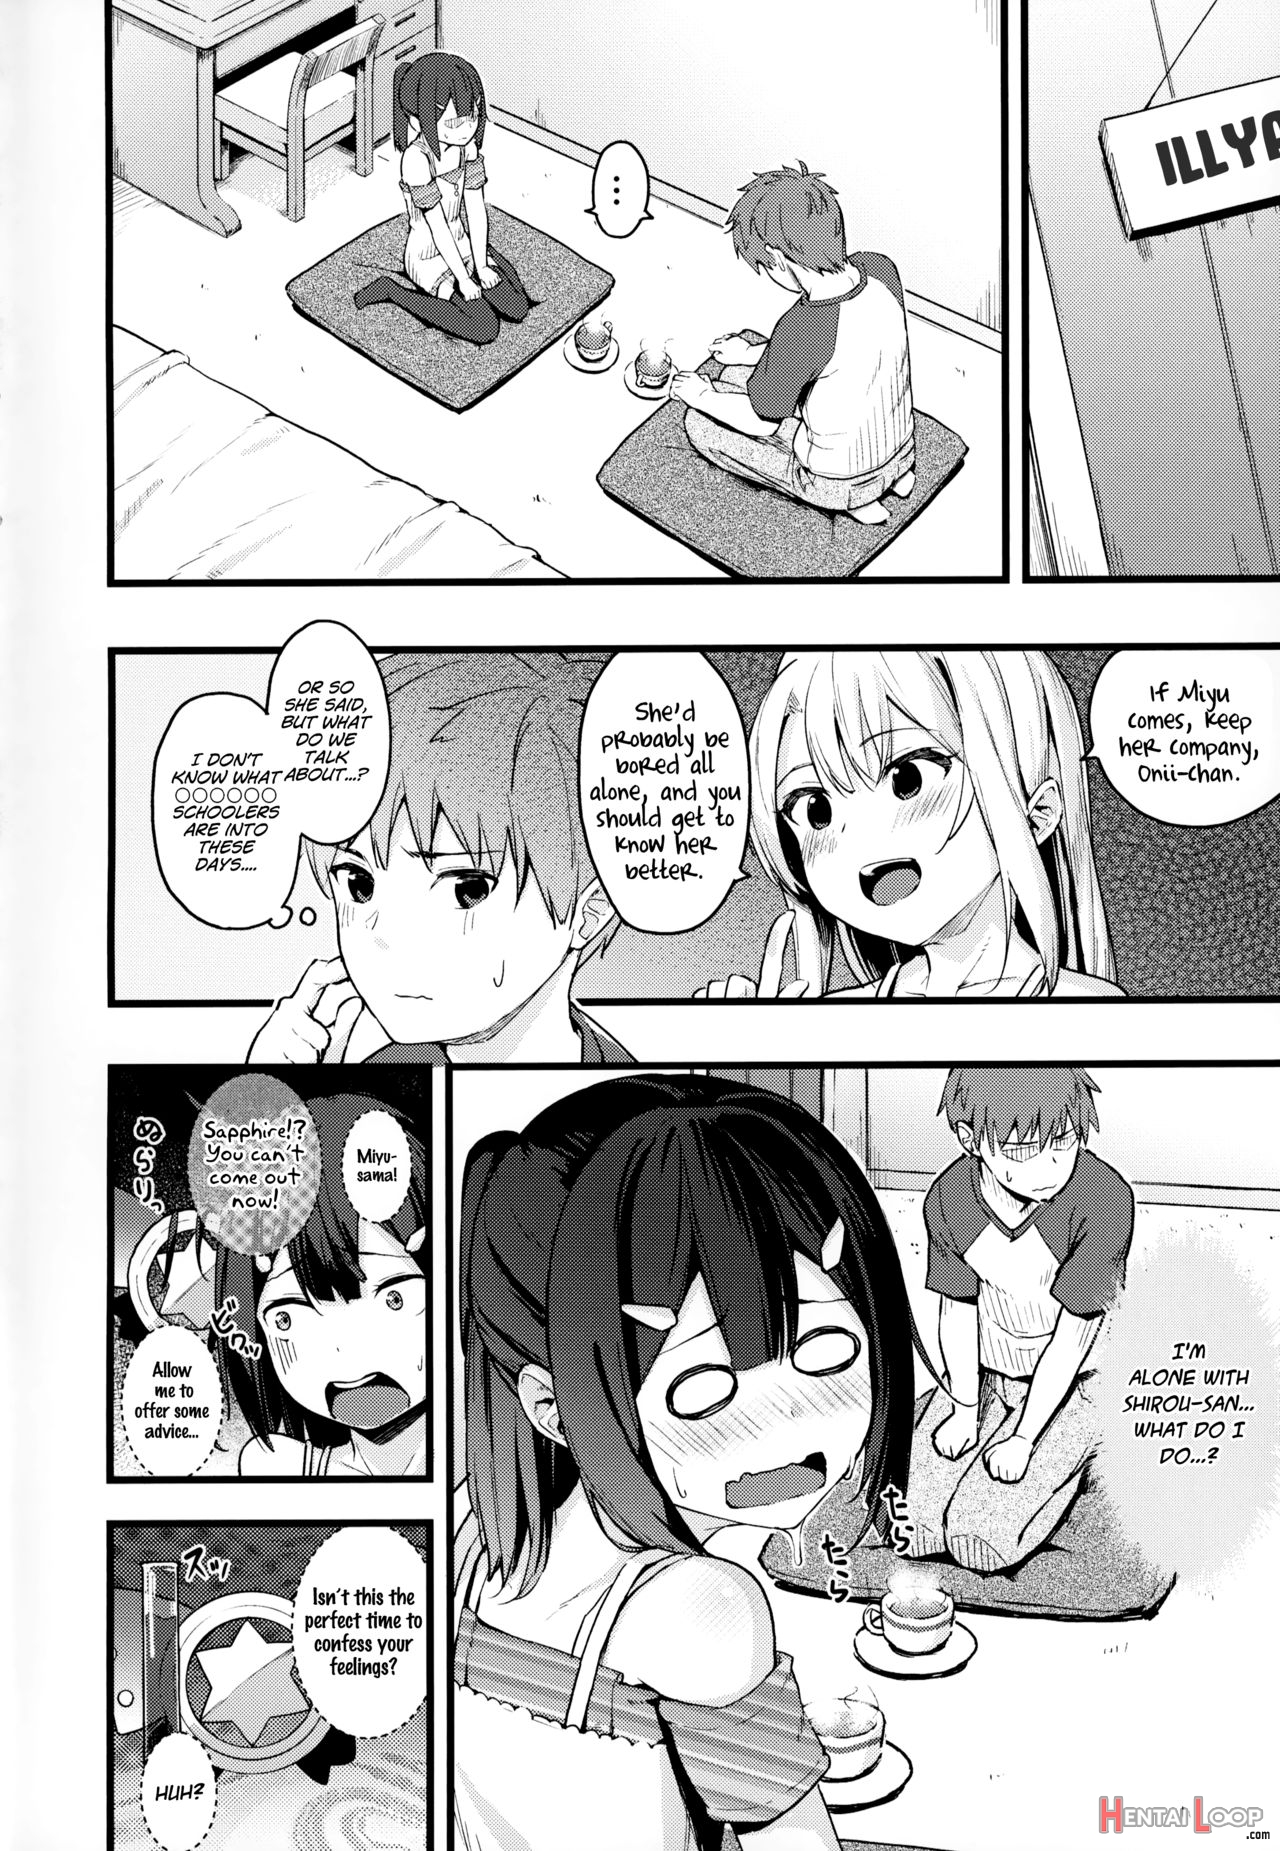 Miyu-chan No Install! Sweet Sister! page 3